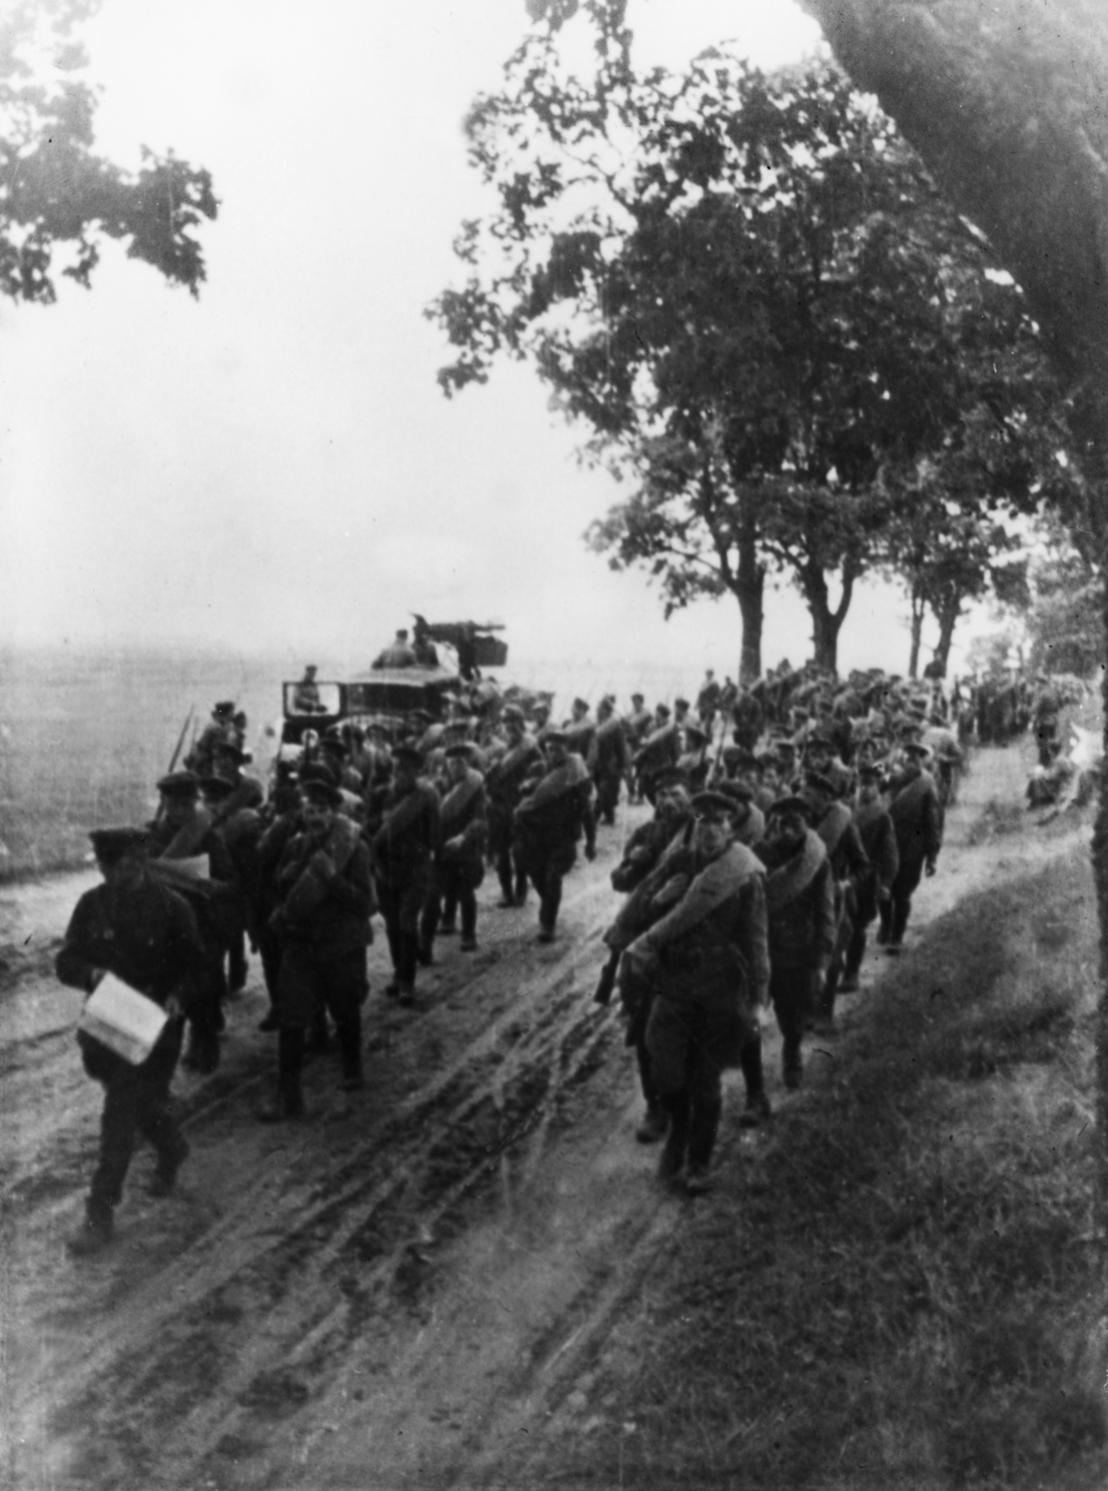 Wkroczenie wojsk sowieckich do Polski 17 września 1939 r.